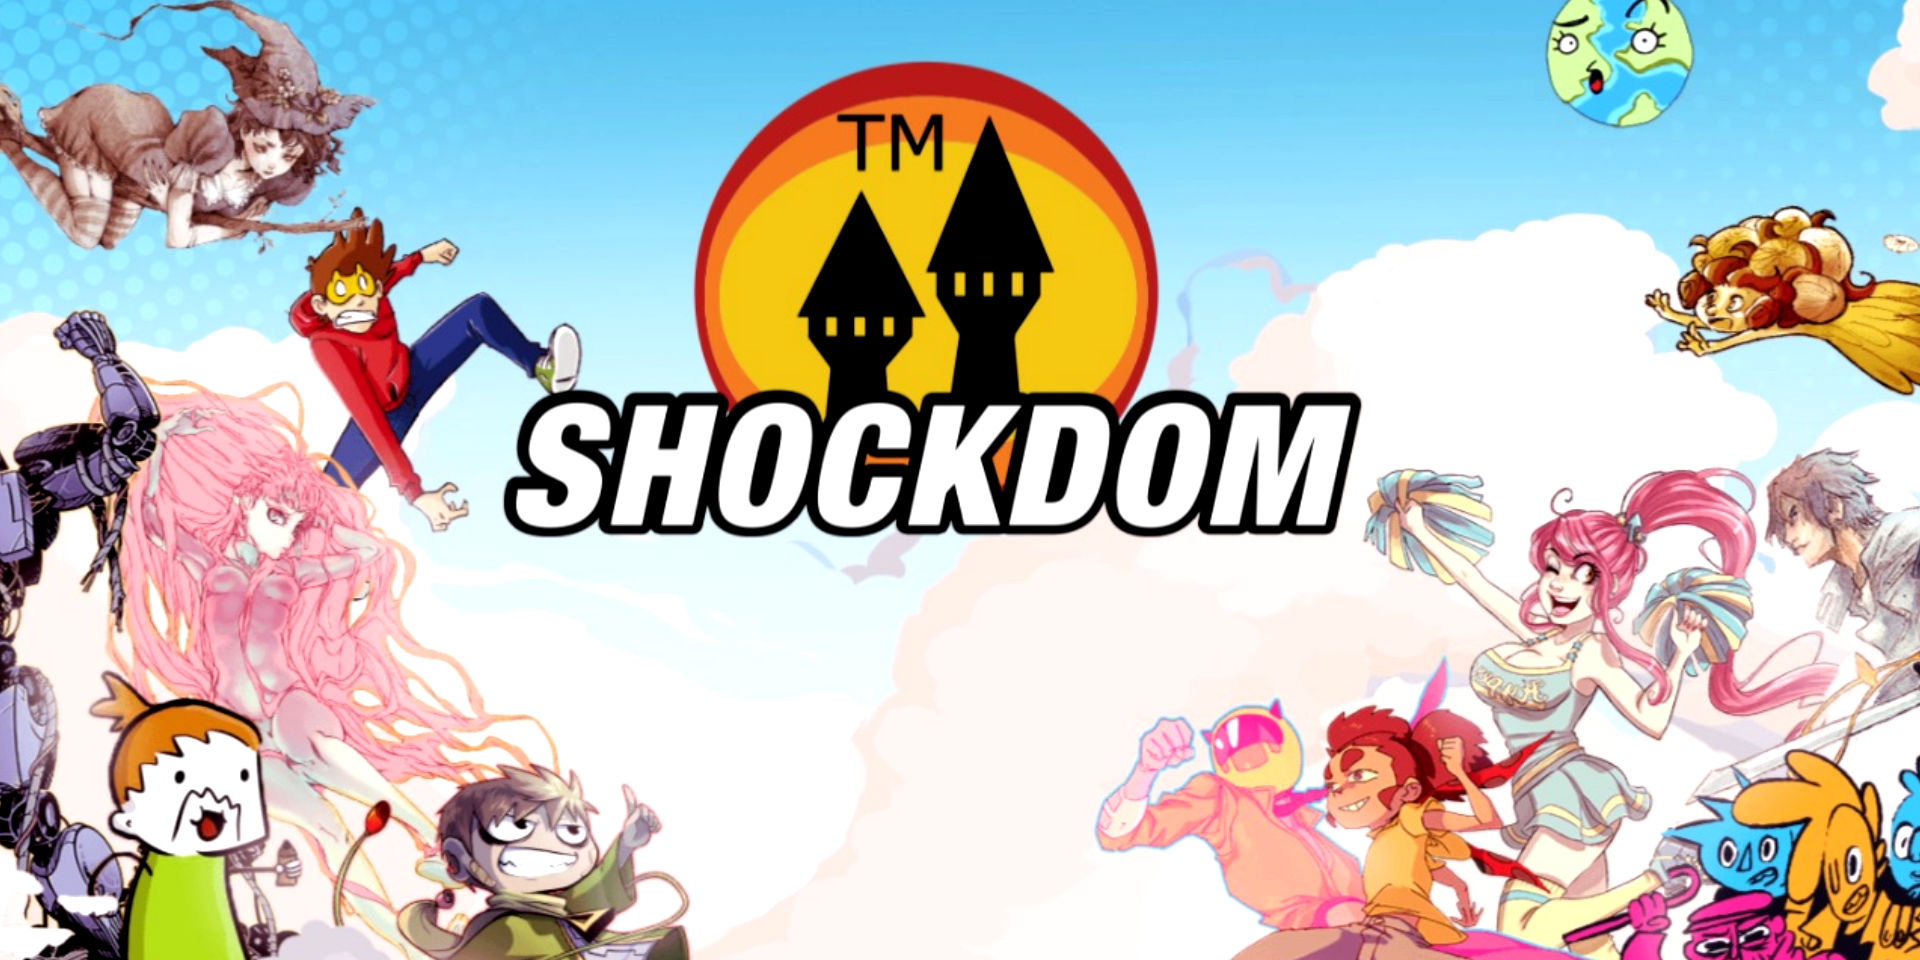 Qualche info sulla Shockdom